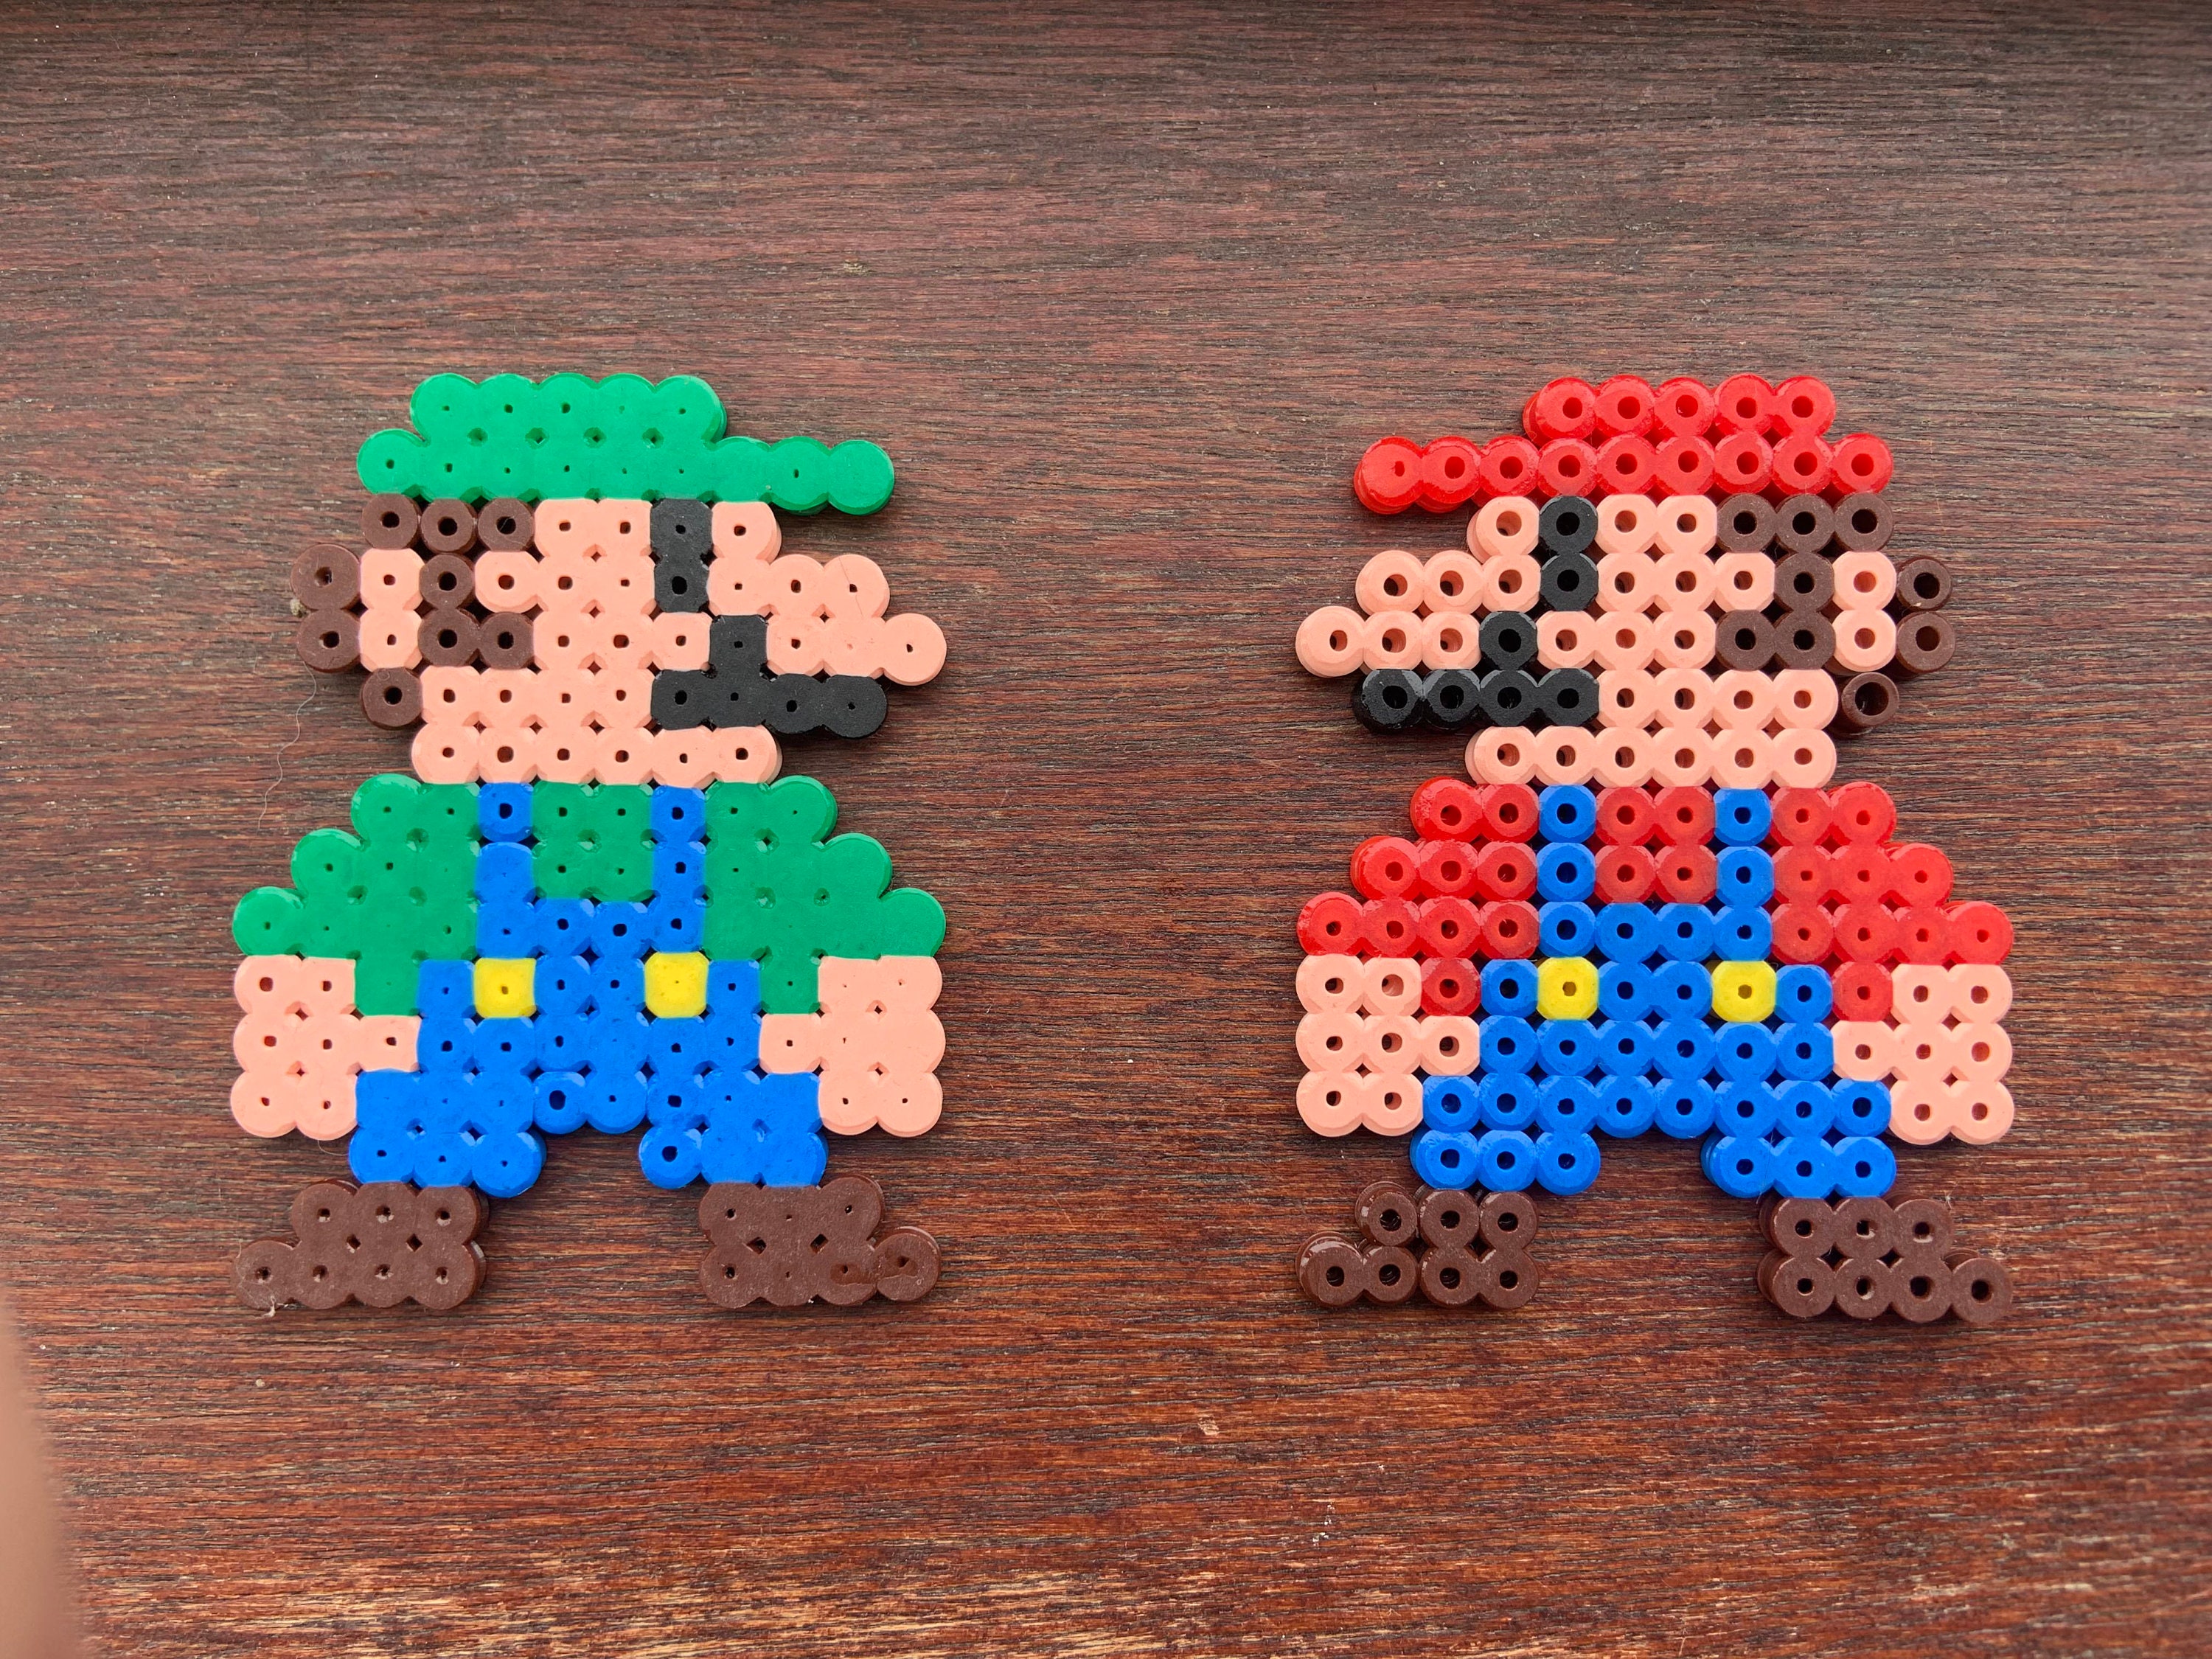 Mario vs Luigi Wood Print by YapapaPriest - Pixels